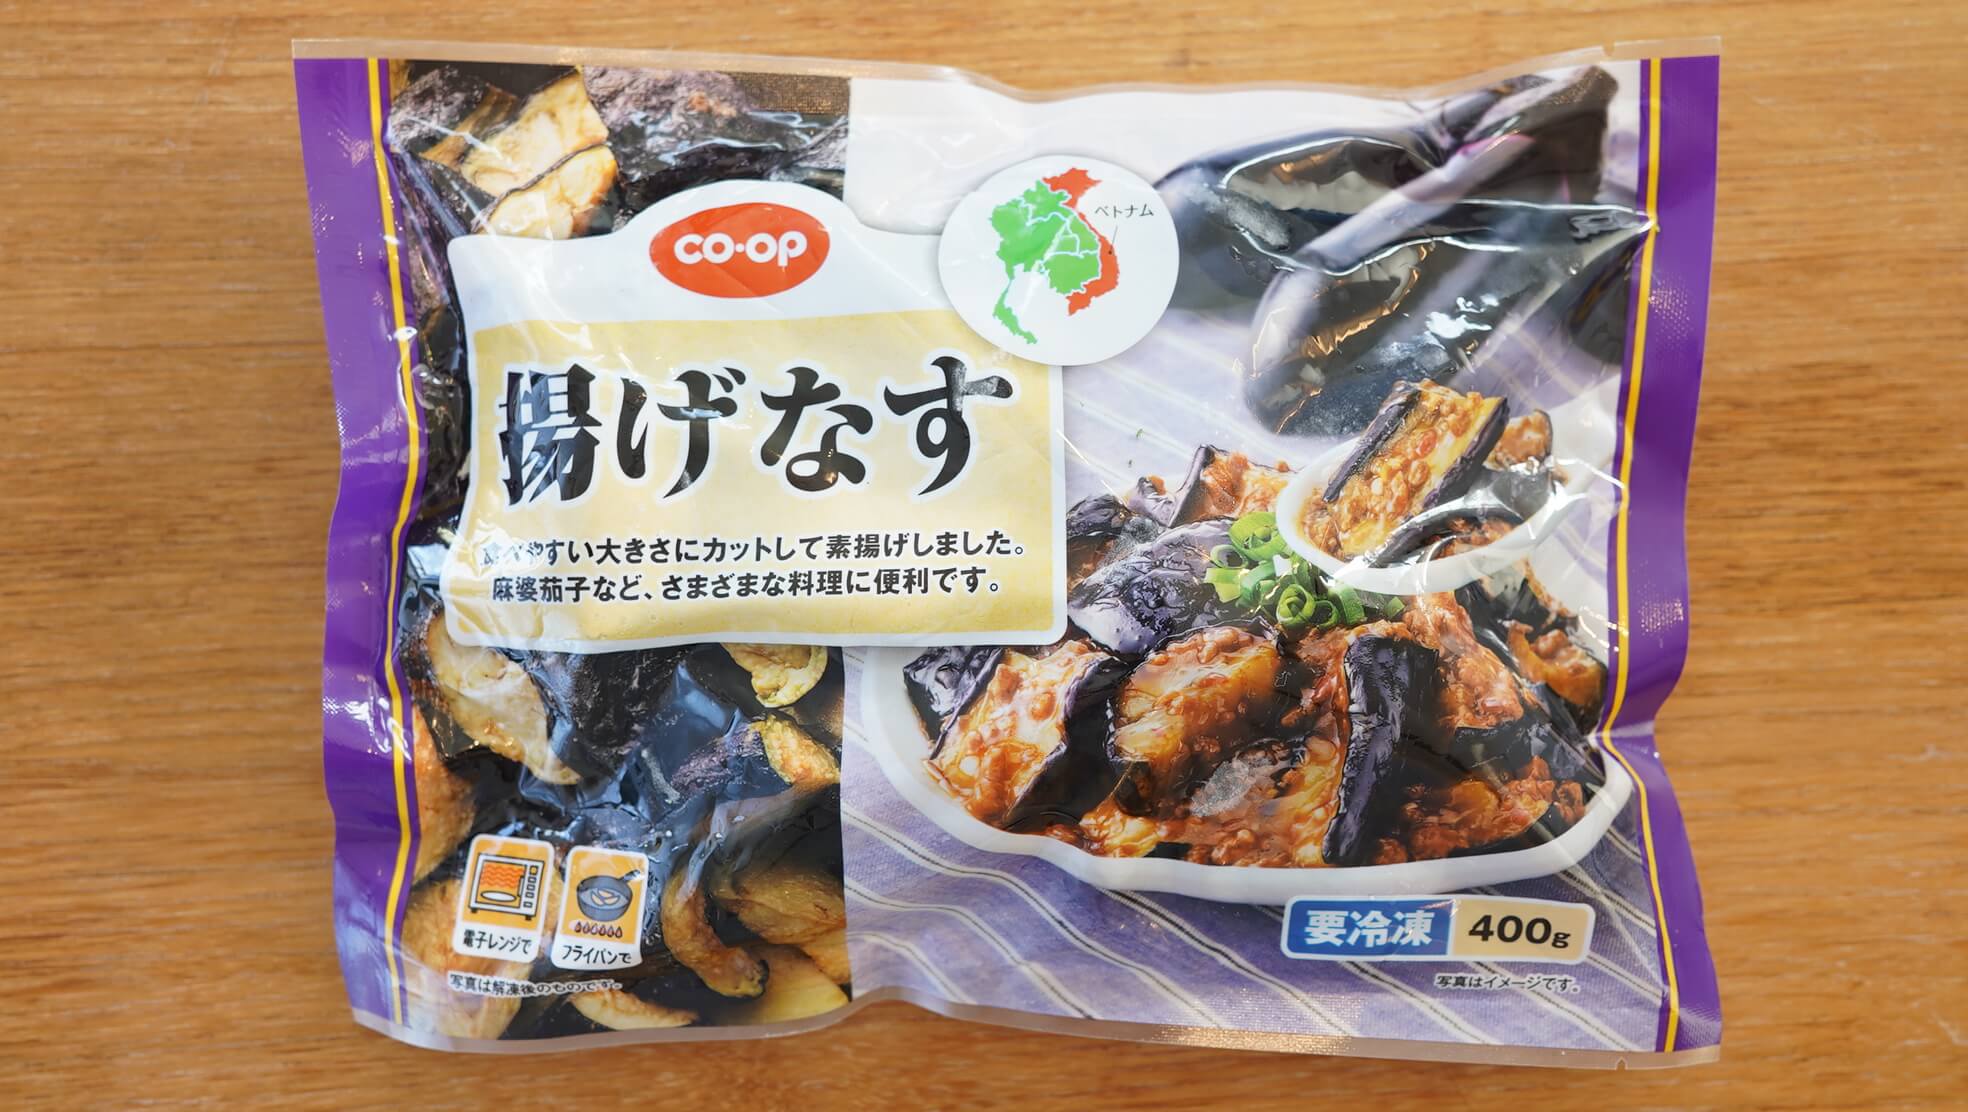 生協coop宅配の冷凍食品「揚げなす」のパッケージ写真